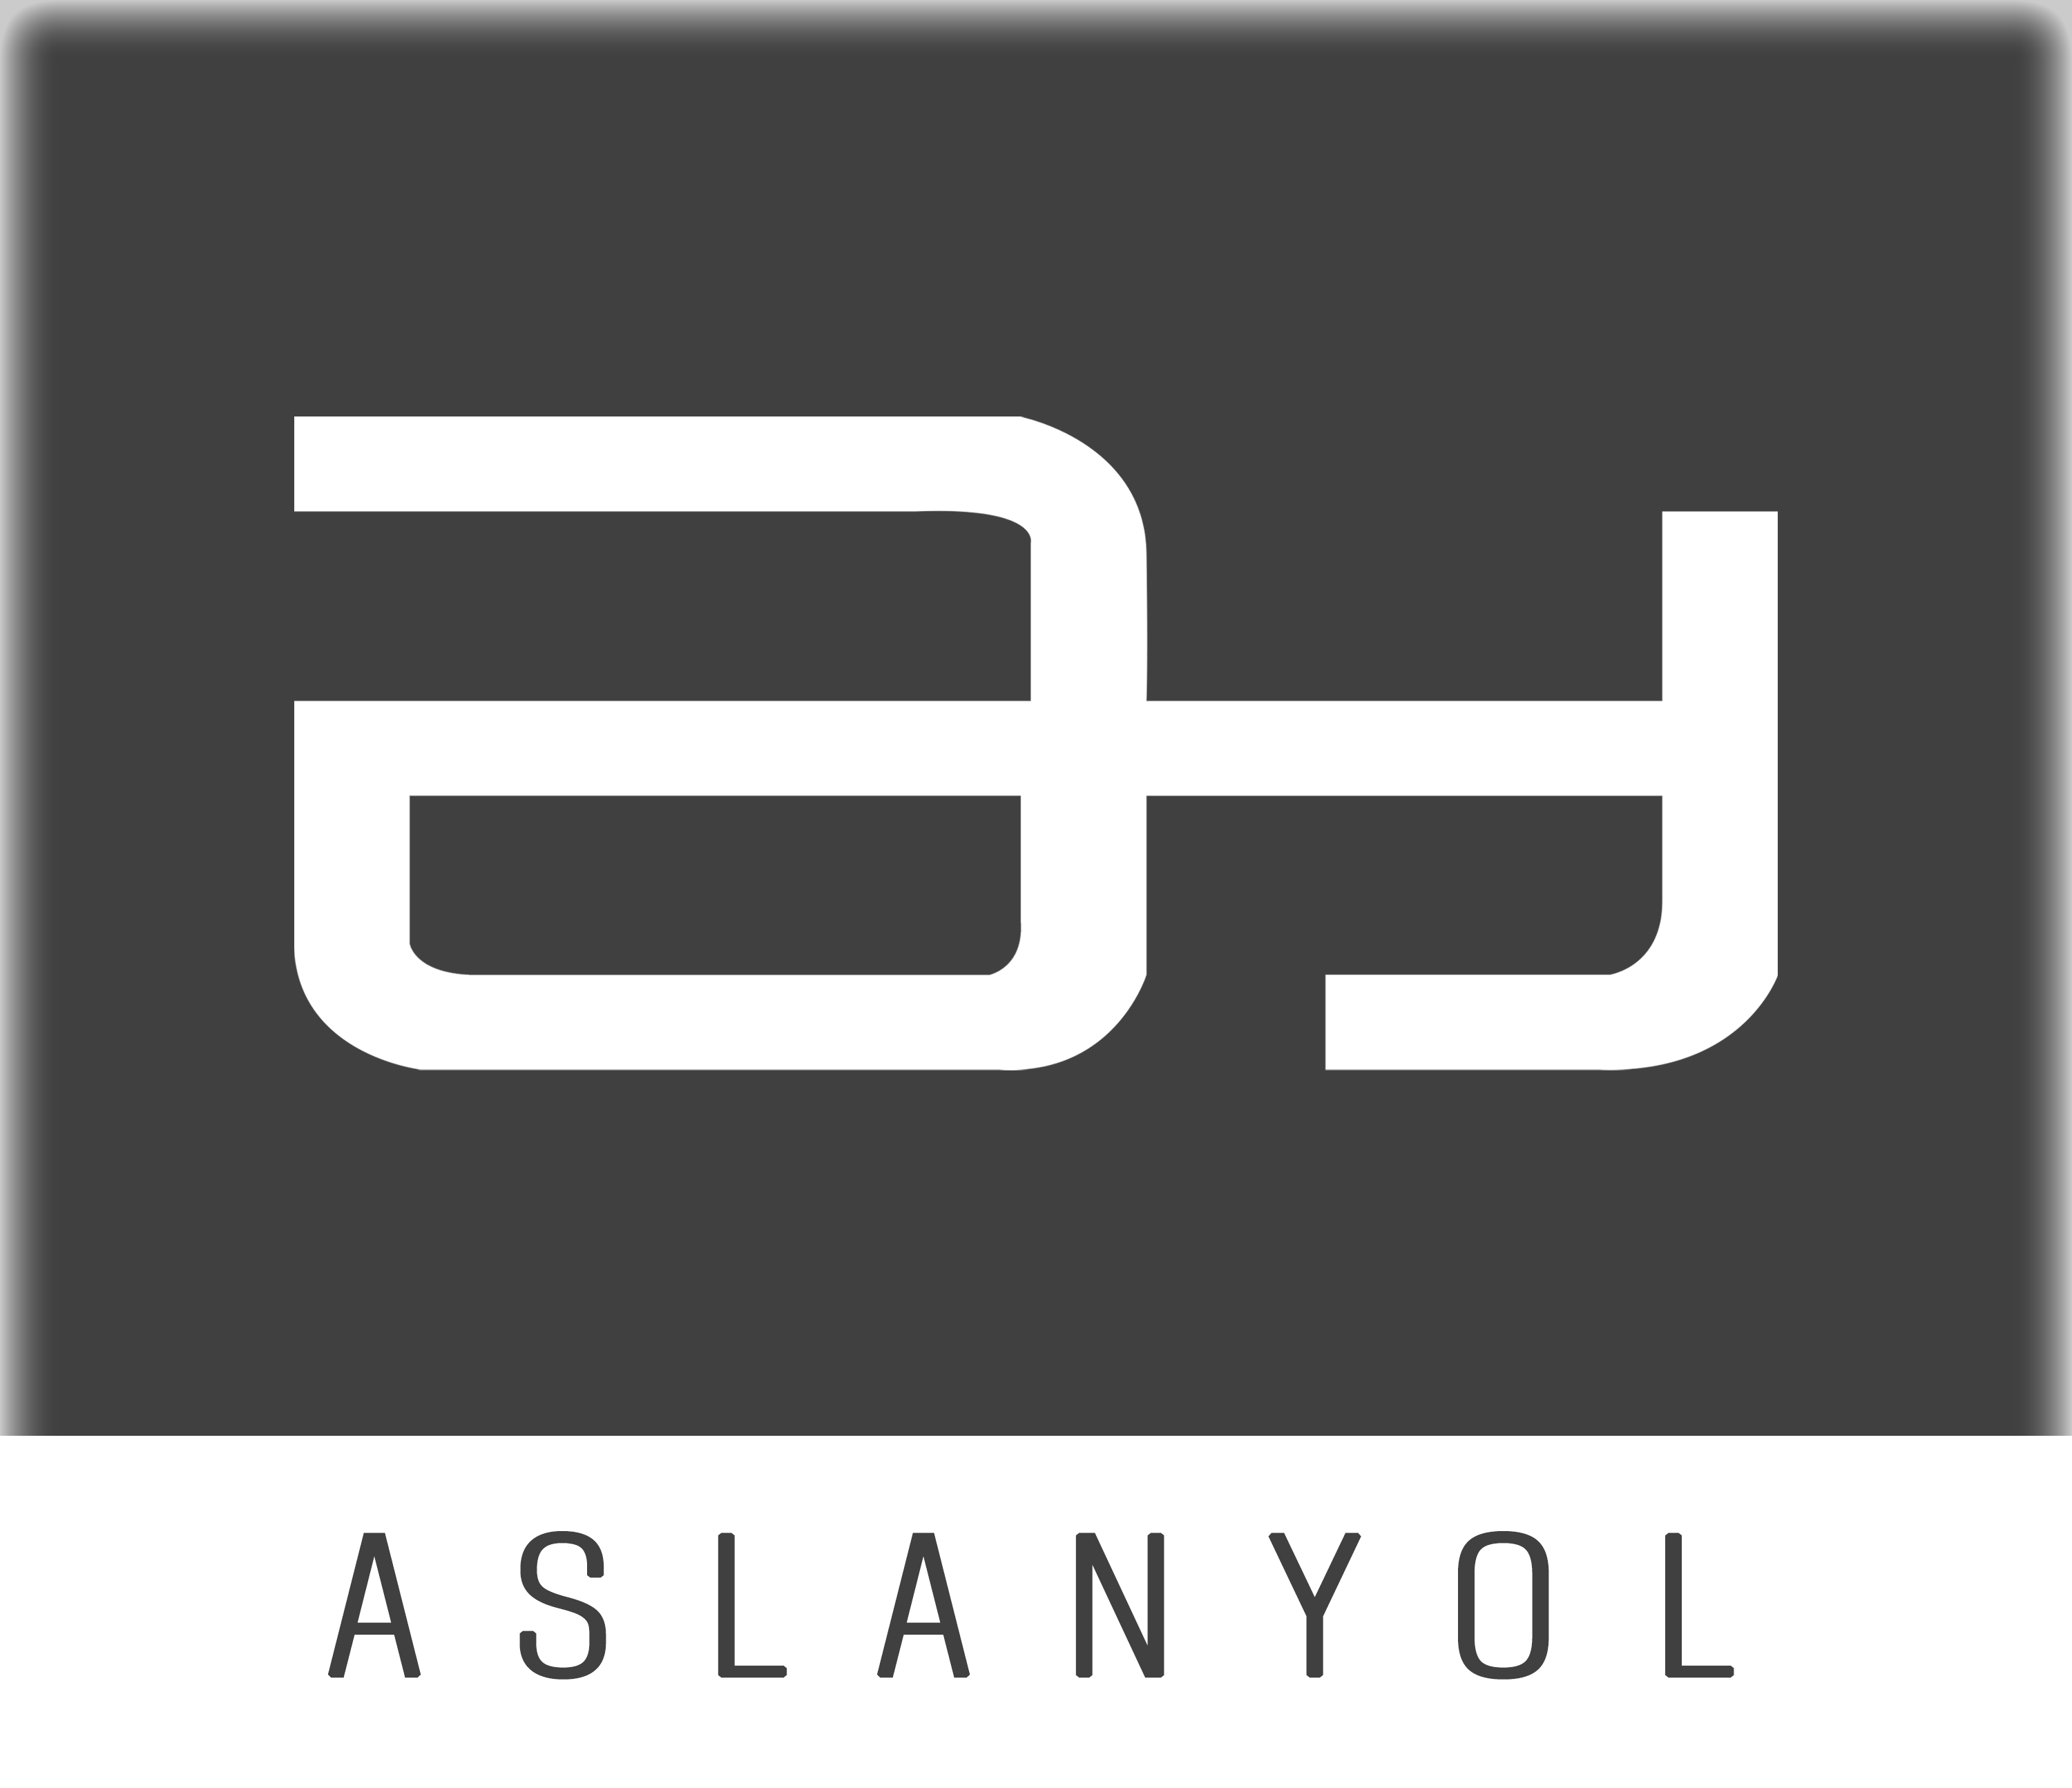 ASLANLAR & ASLANYOL İNŞAAT LTD ŞTİ.